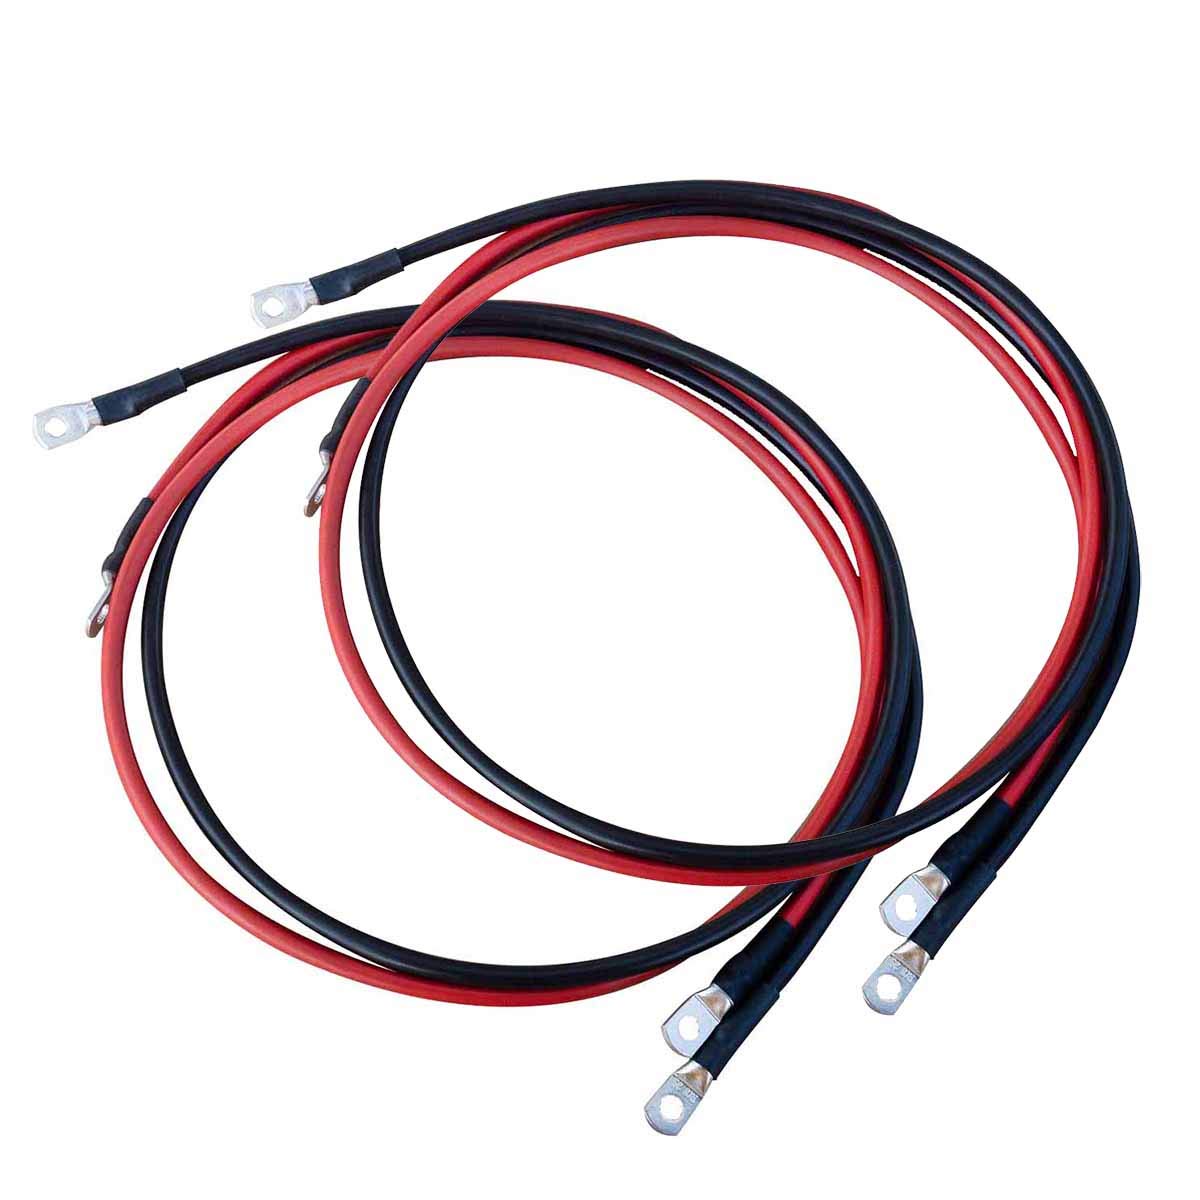 ECTIVE Wechselrichter-Kabel – M8/M8, 1,5m, rot/schwarz, Kupfer, 35 mm² - Batteriekabel, Kabel-Satz, Kabel für Wechselrichter 3000W mit Ringösen für 12V Batterie, Versorgungsbatterie, Autobatterie von ECTIVE